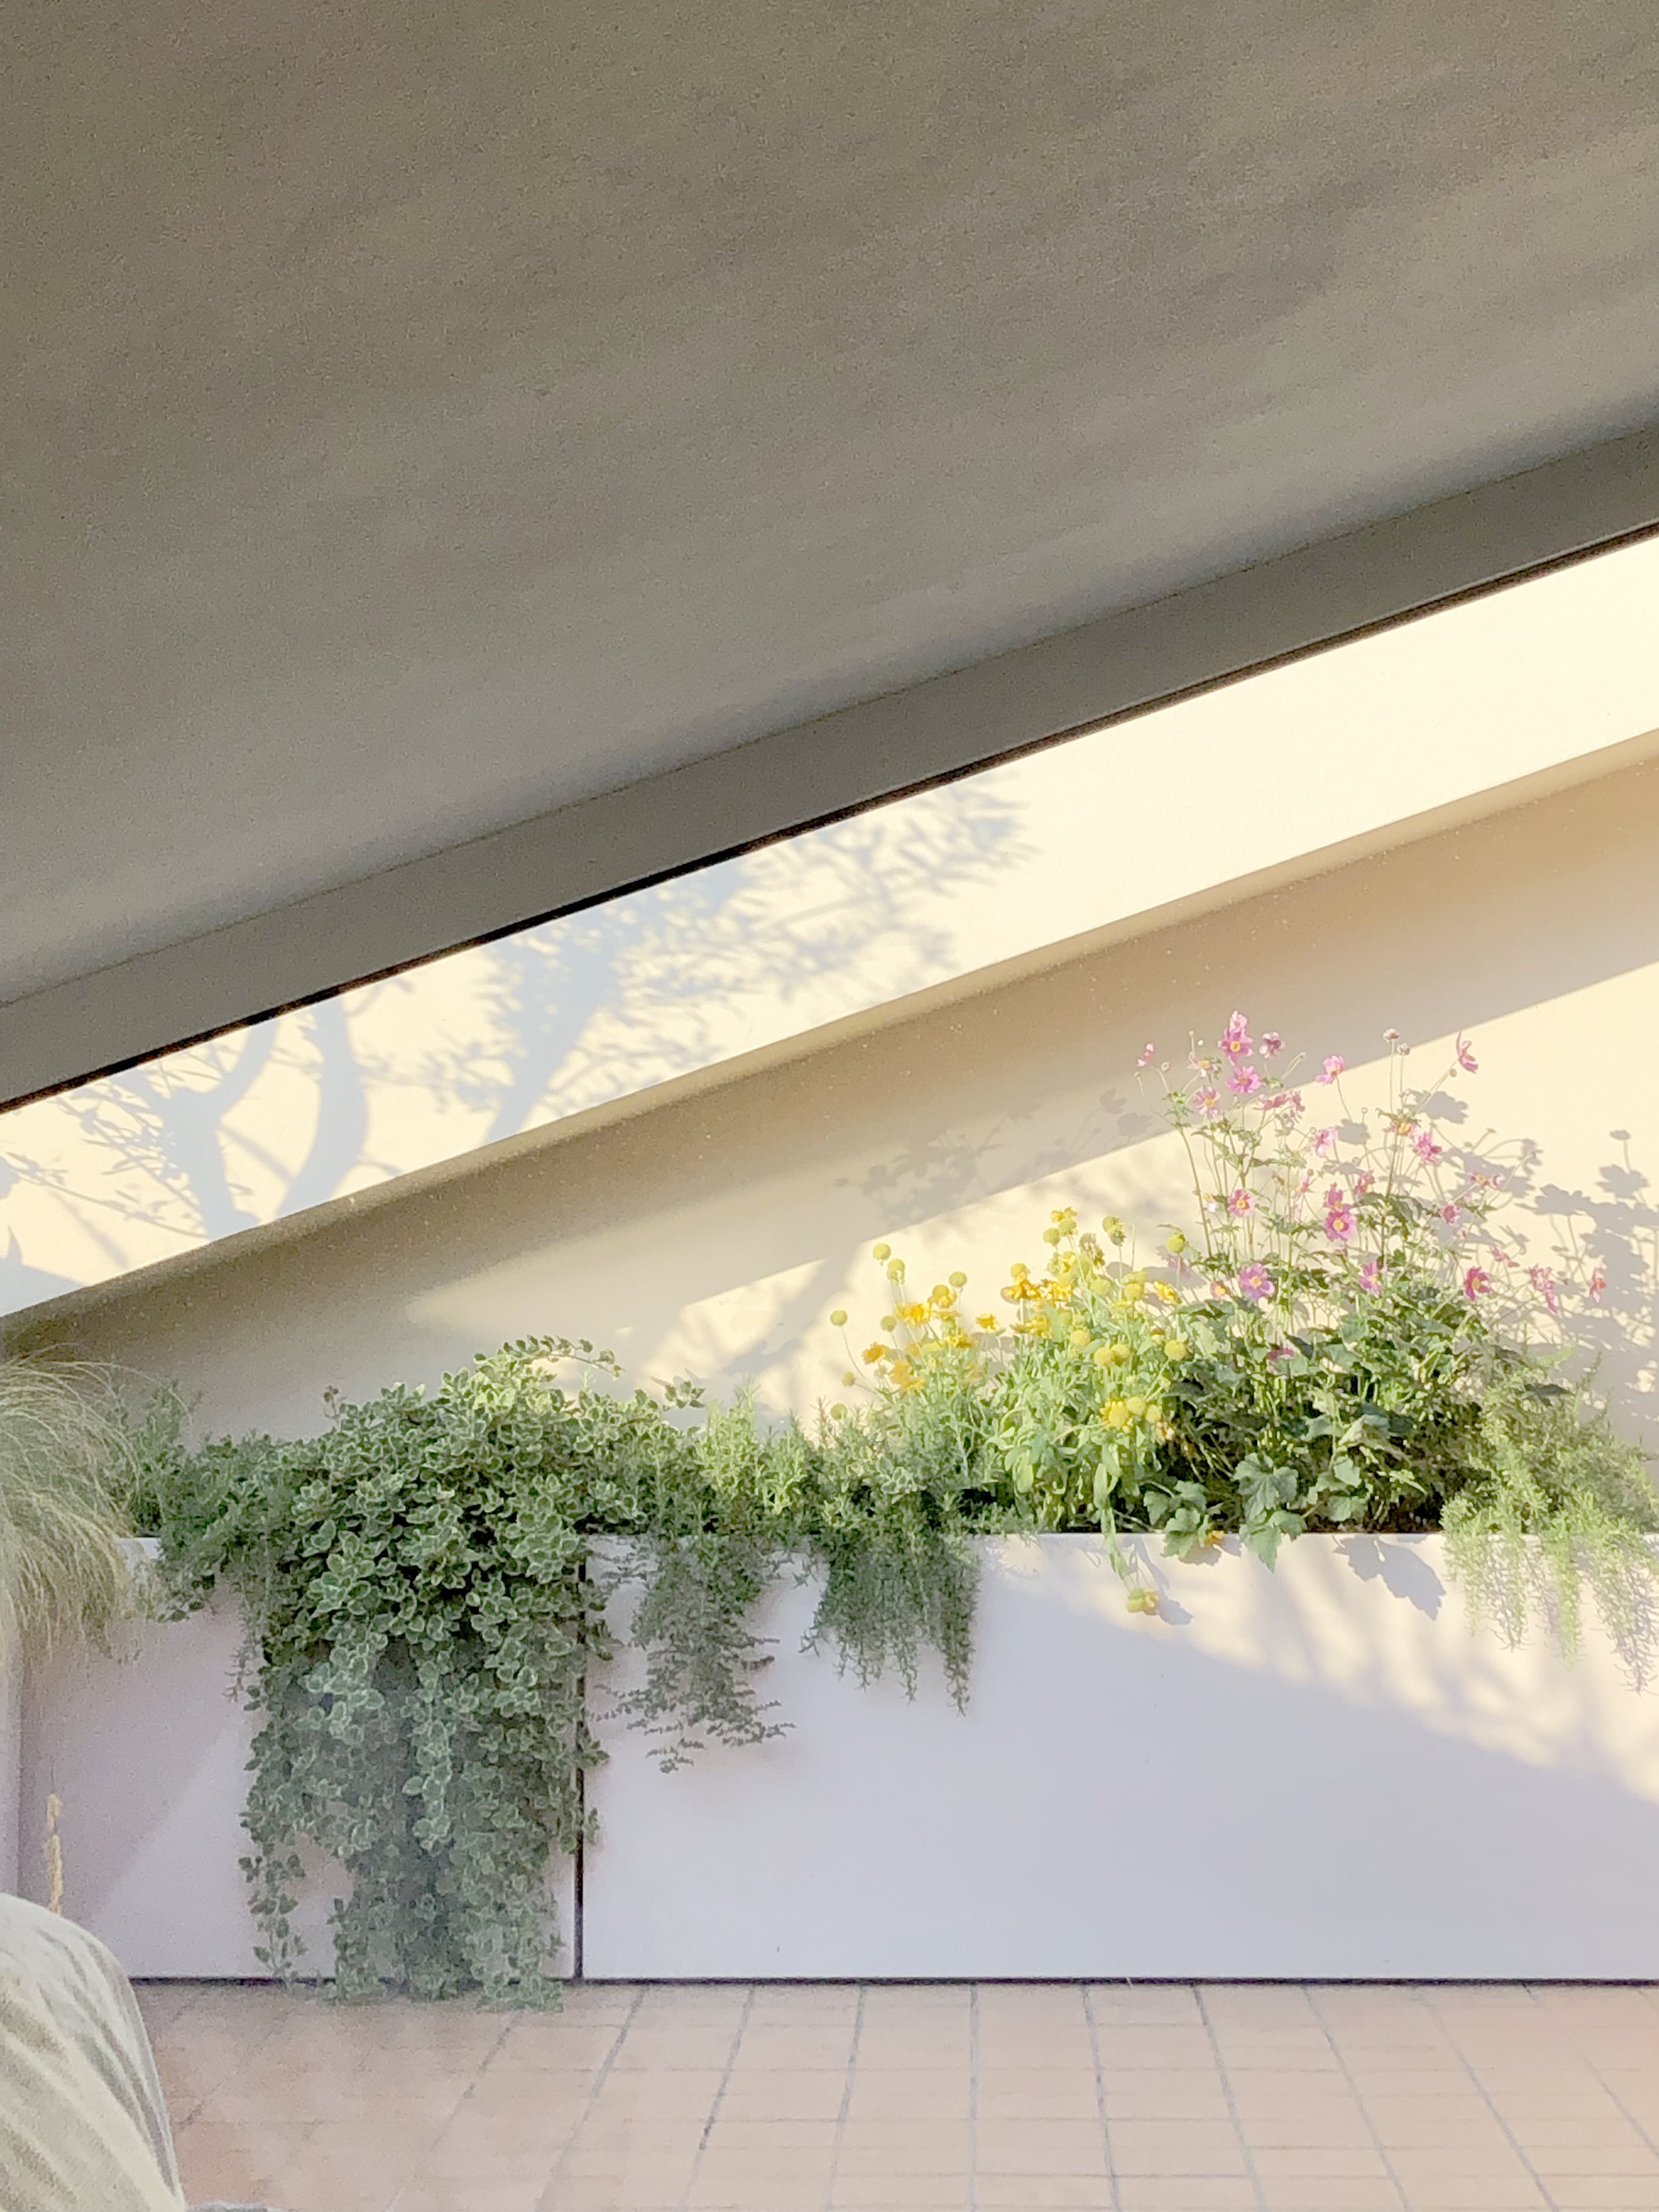 Rooftop design by Olbos Studio, Verona (Italy) 2020